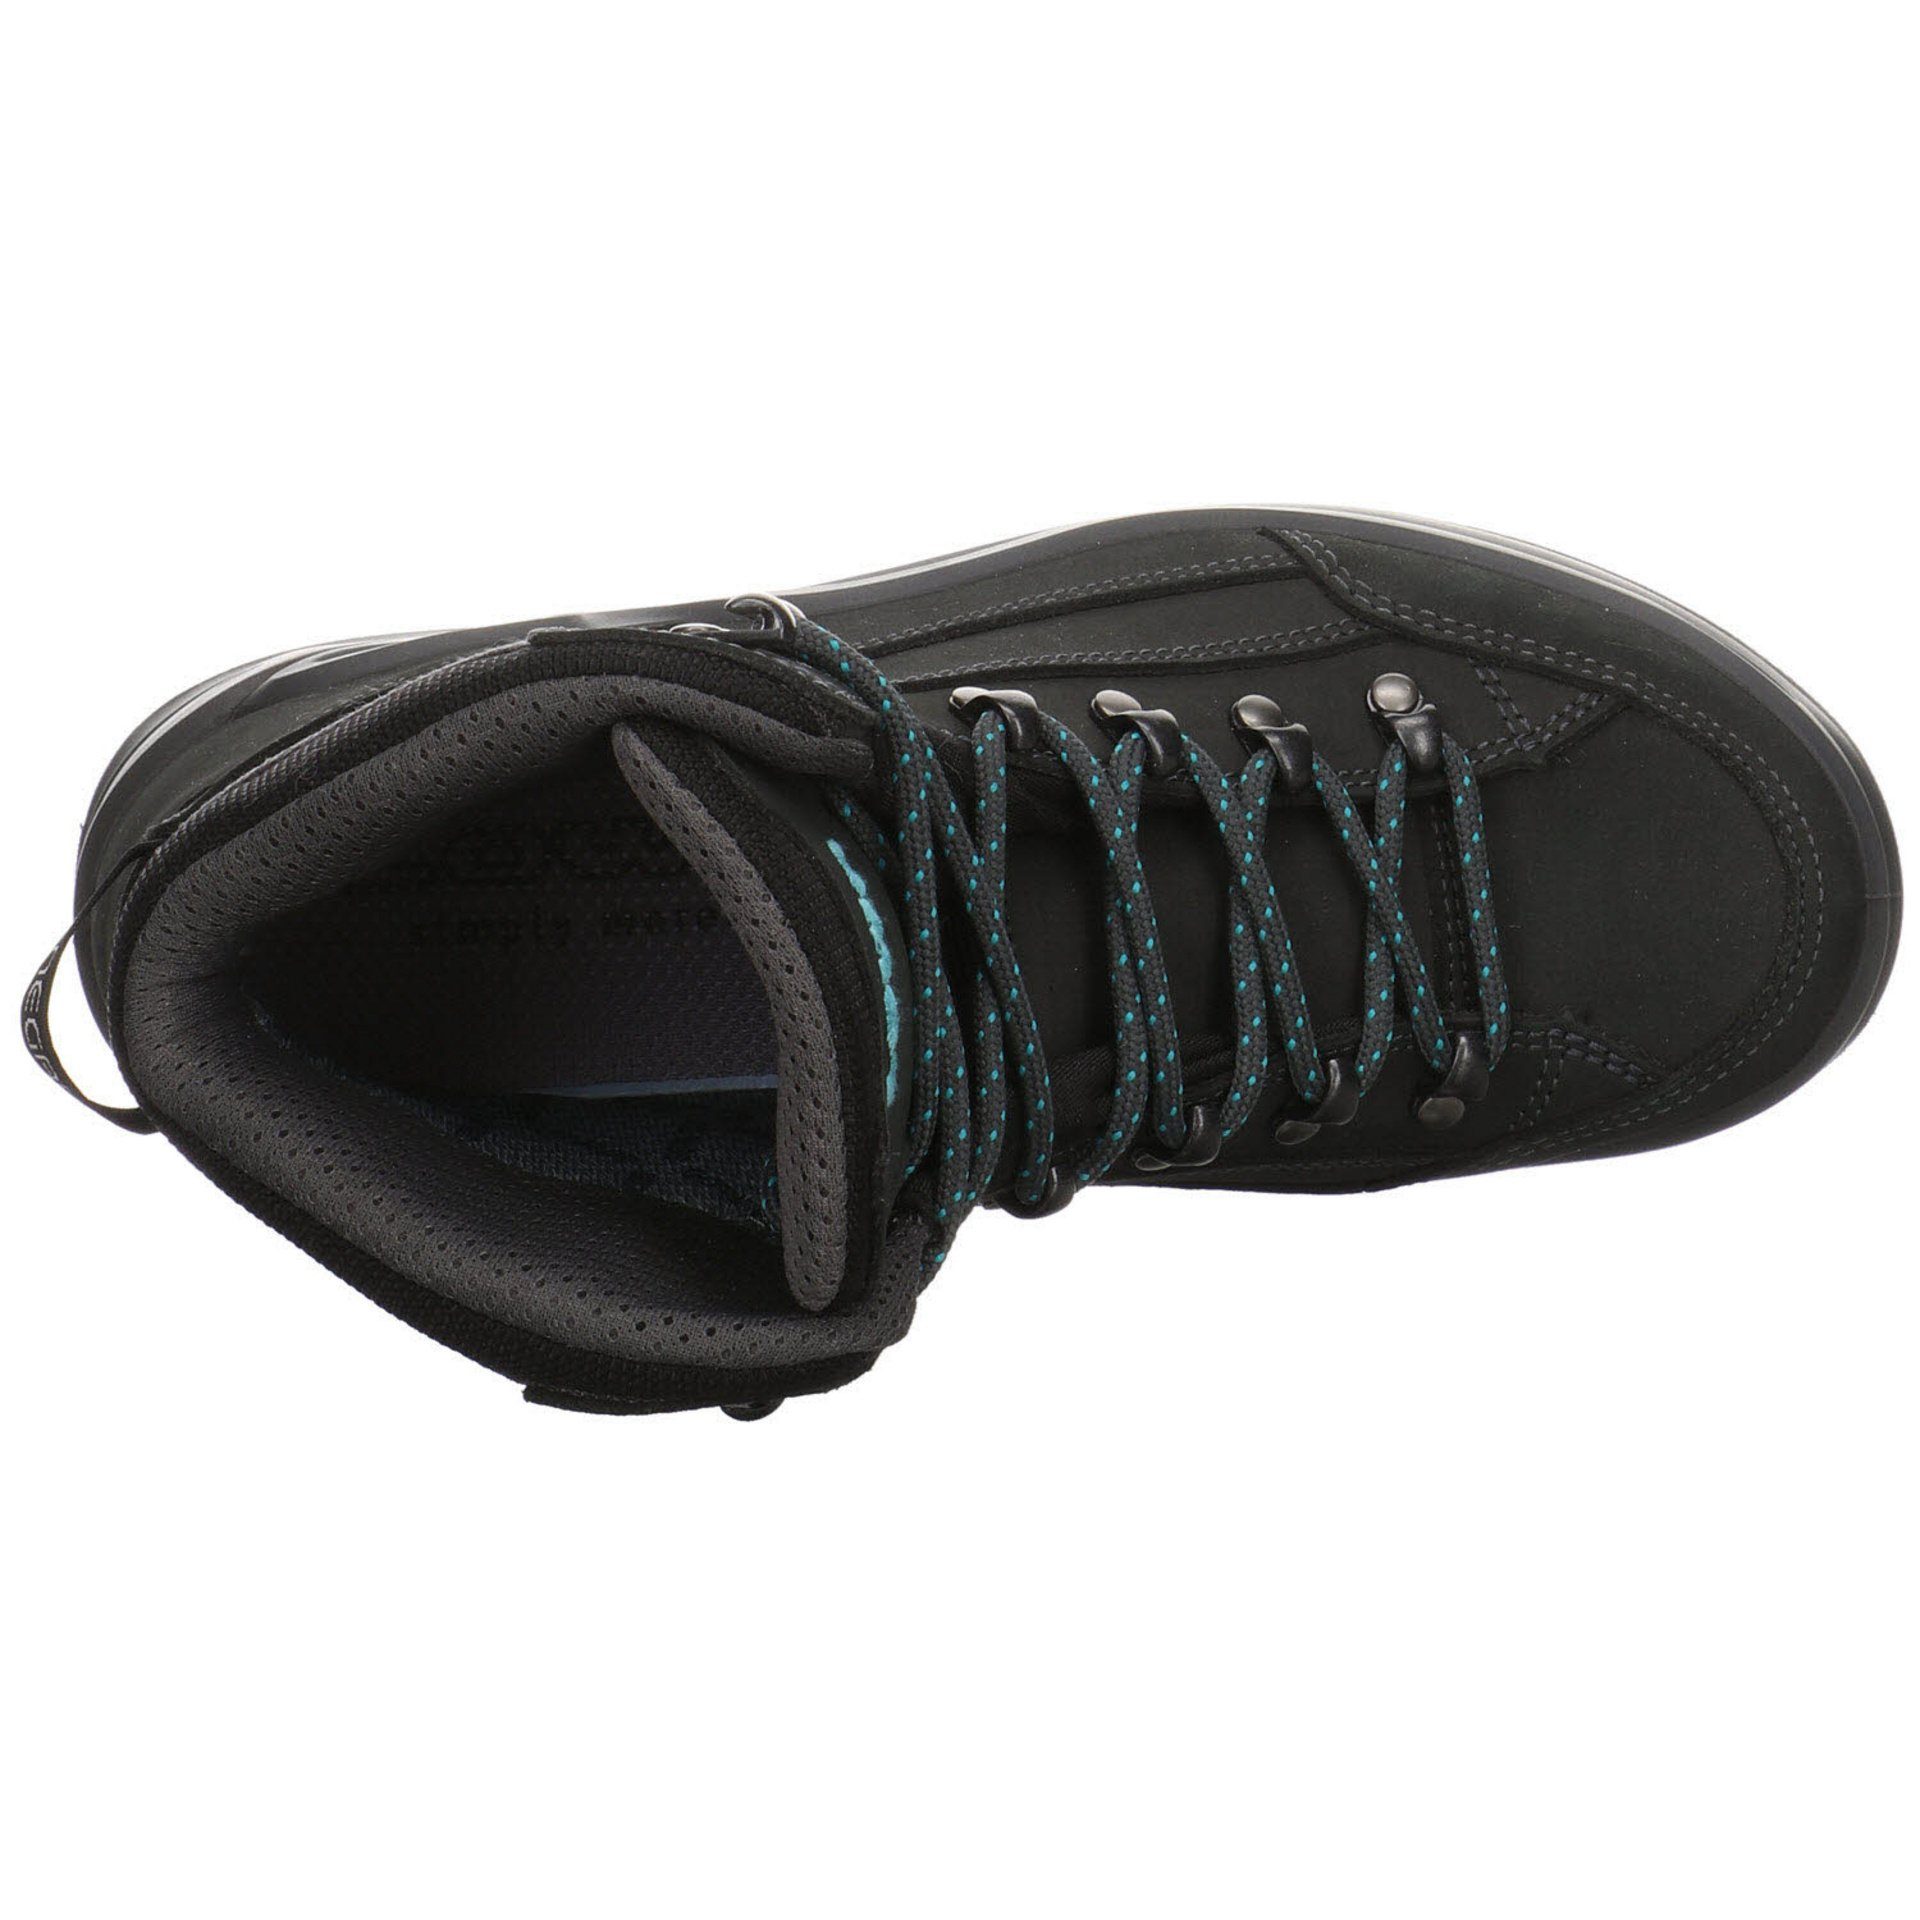 Outdoorschuh Damen Outdoor Schuhe Renegade Leder-/Textilkombination GTX mid ASPHALT/TÜRKIS Outdoorschuh Lowa